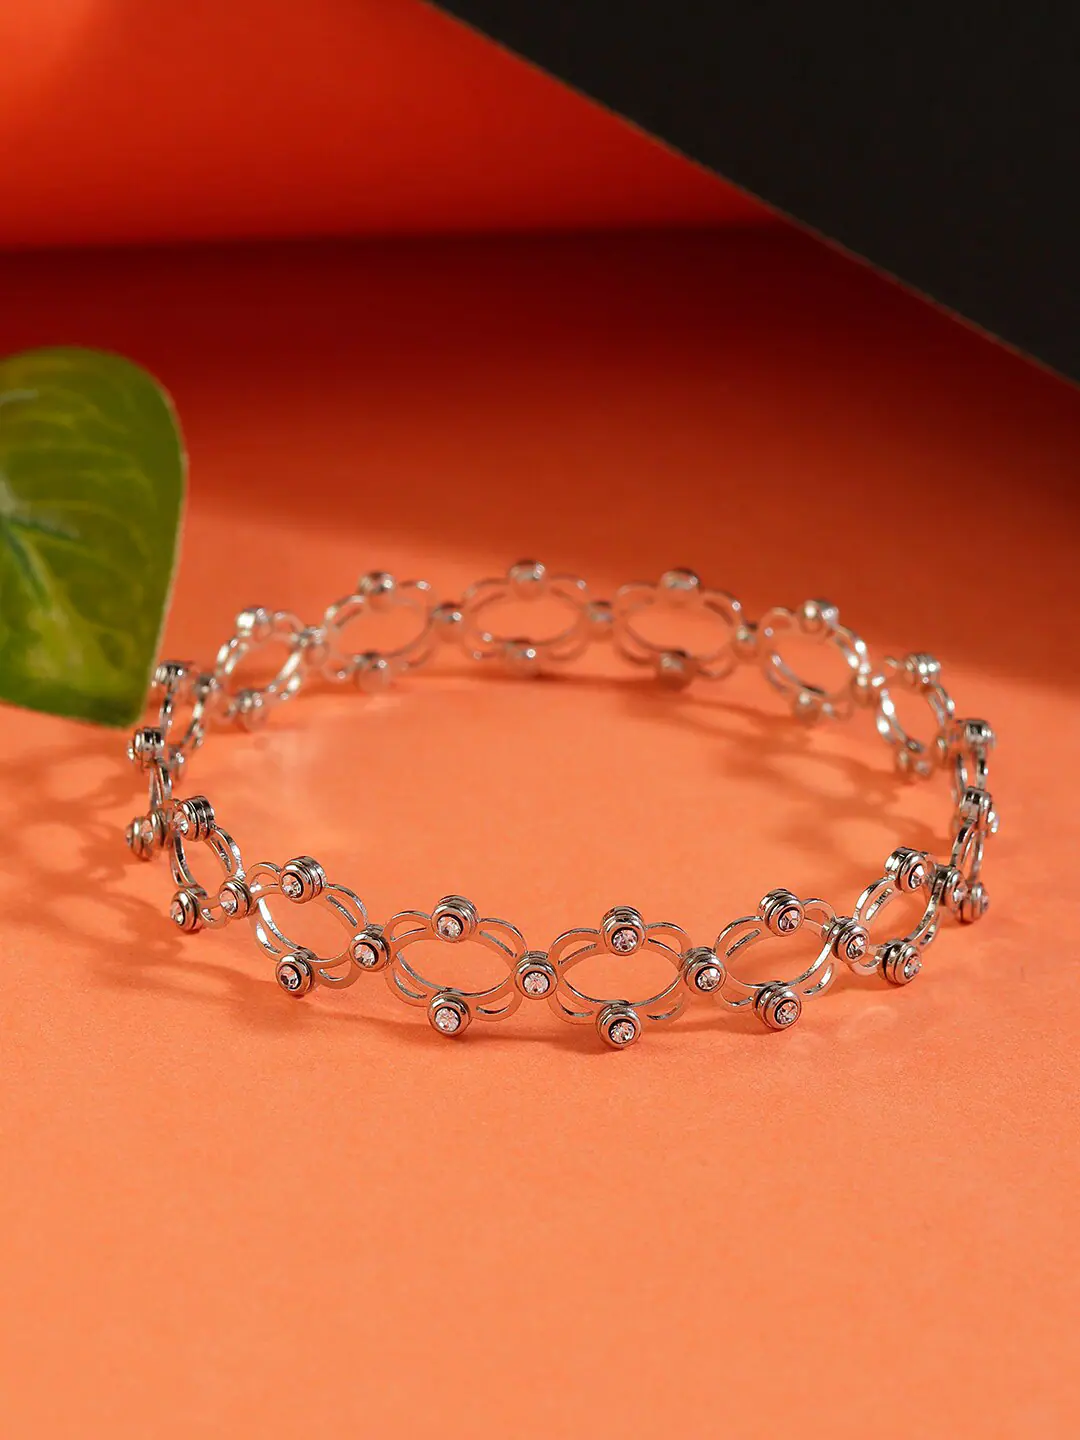 Bracelets - Jewelry - Women | Earthbound Trading Co.